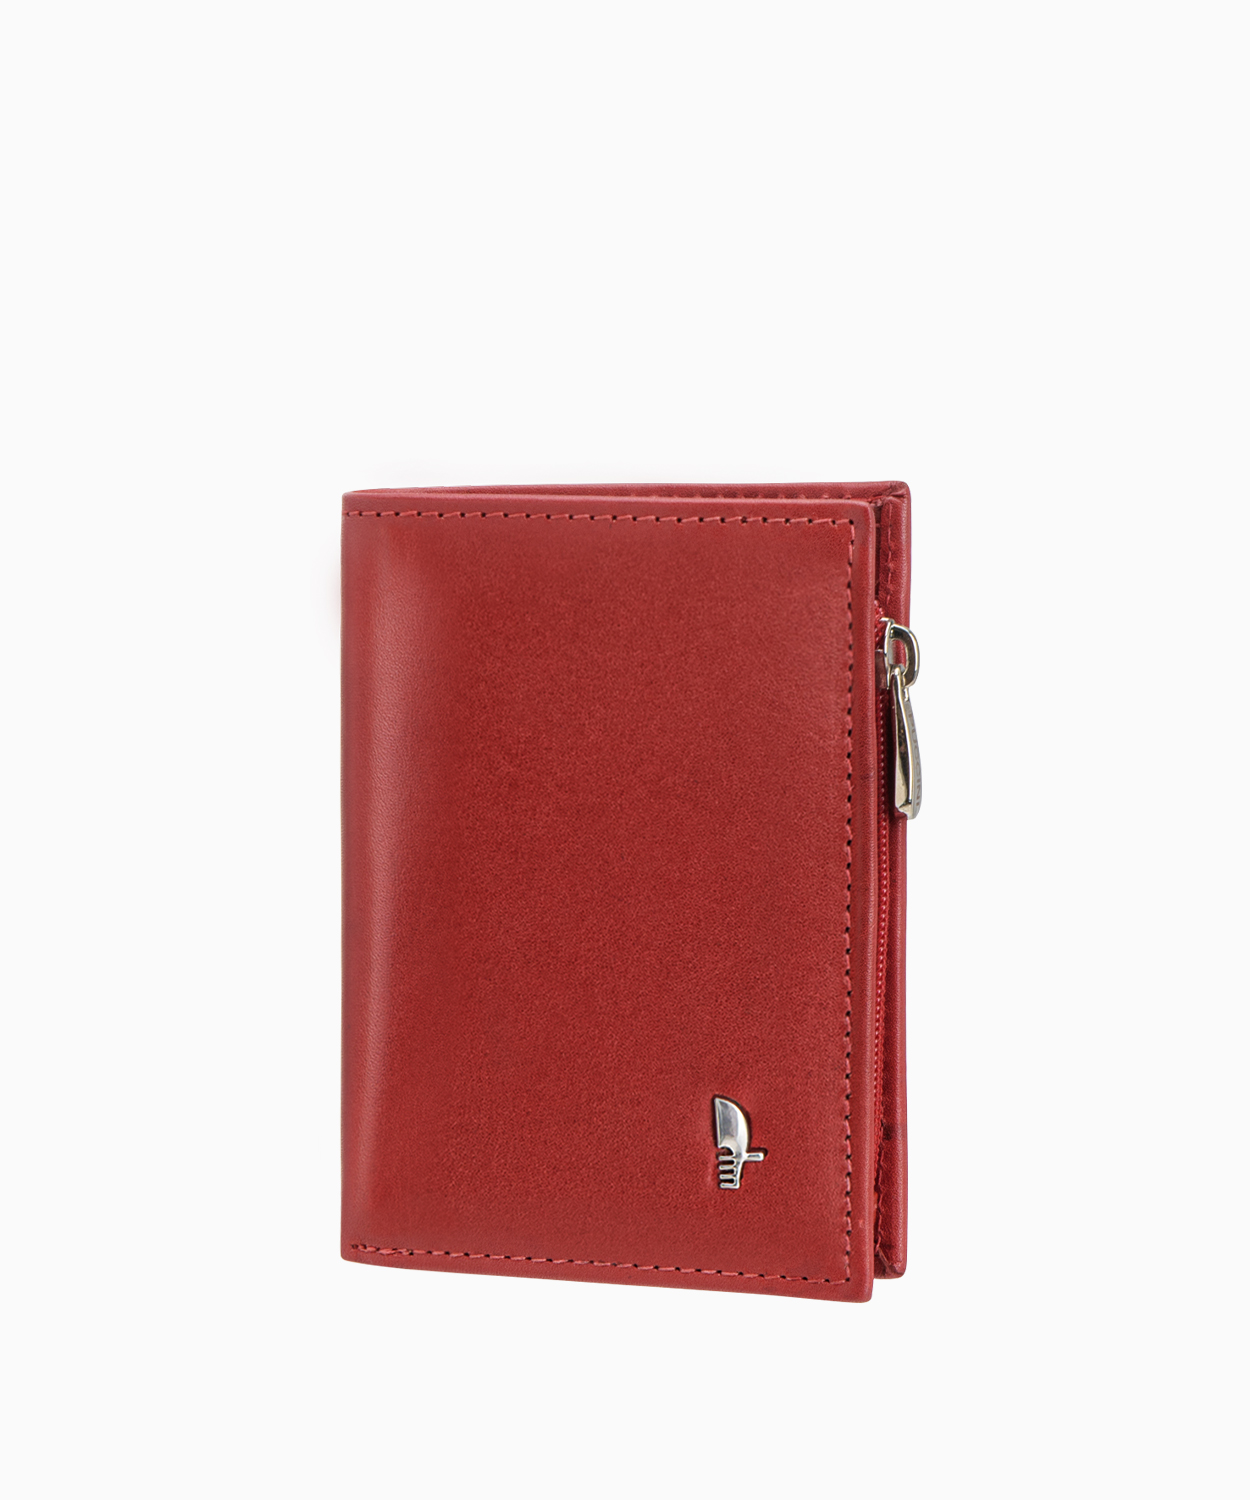 PUCCINI Damski skórzany portfel w kolorze czerwonym